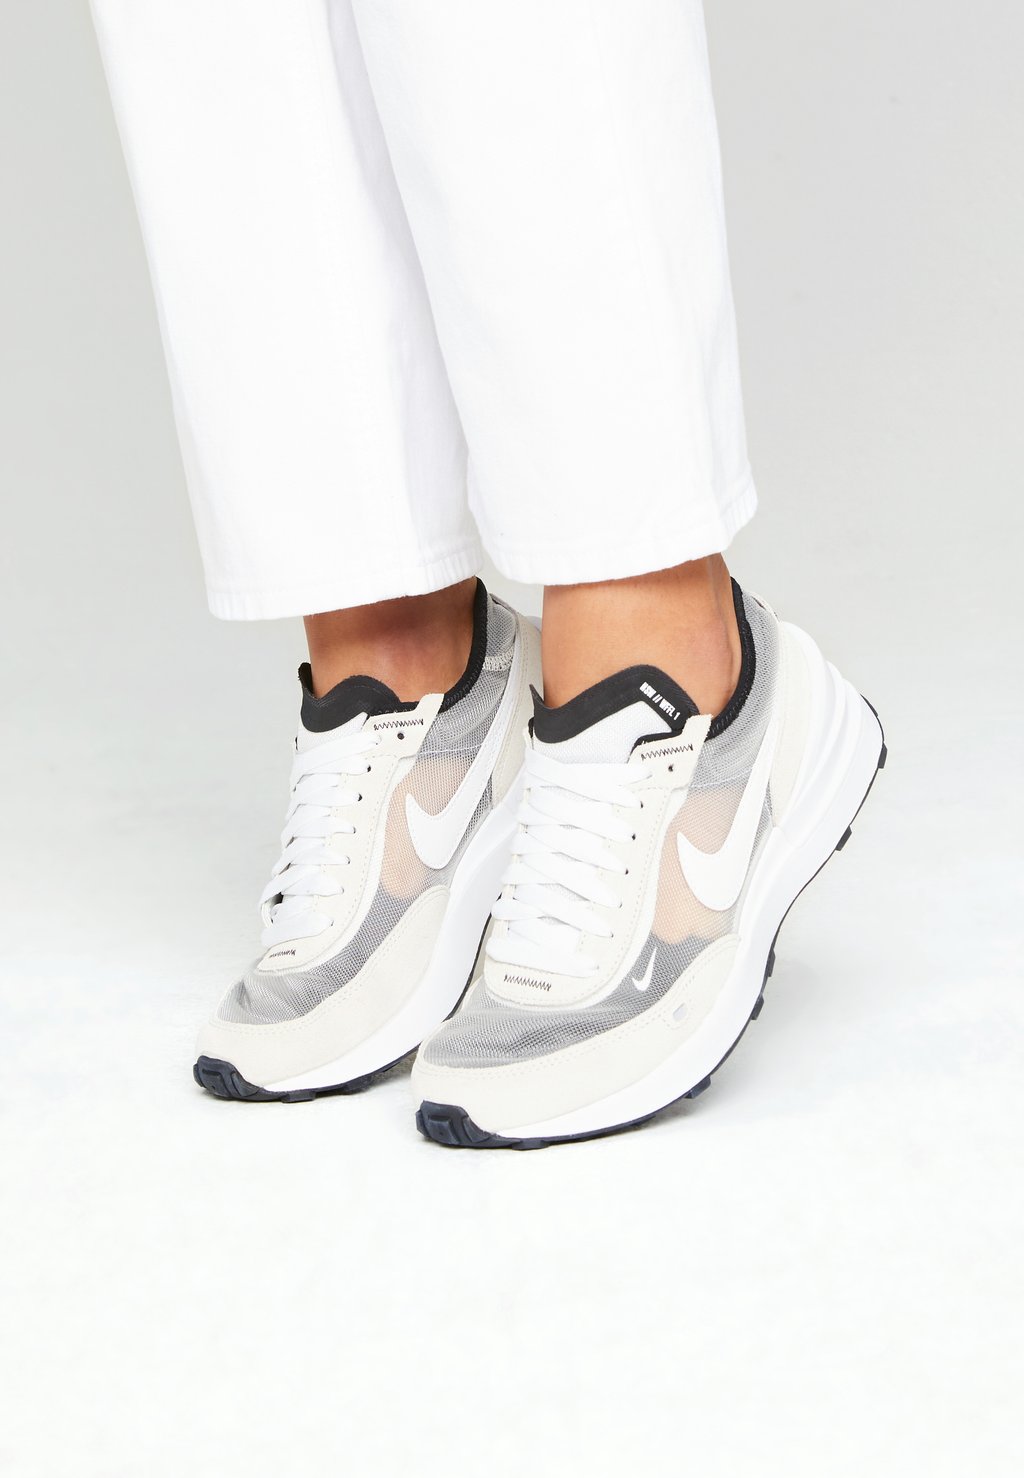 Низкие кроссовки Nike, Summit белый/белый/черный/оранжевый